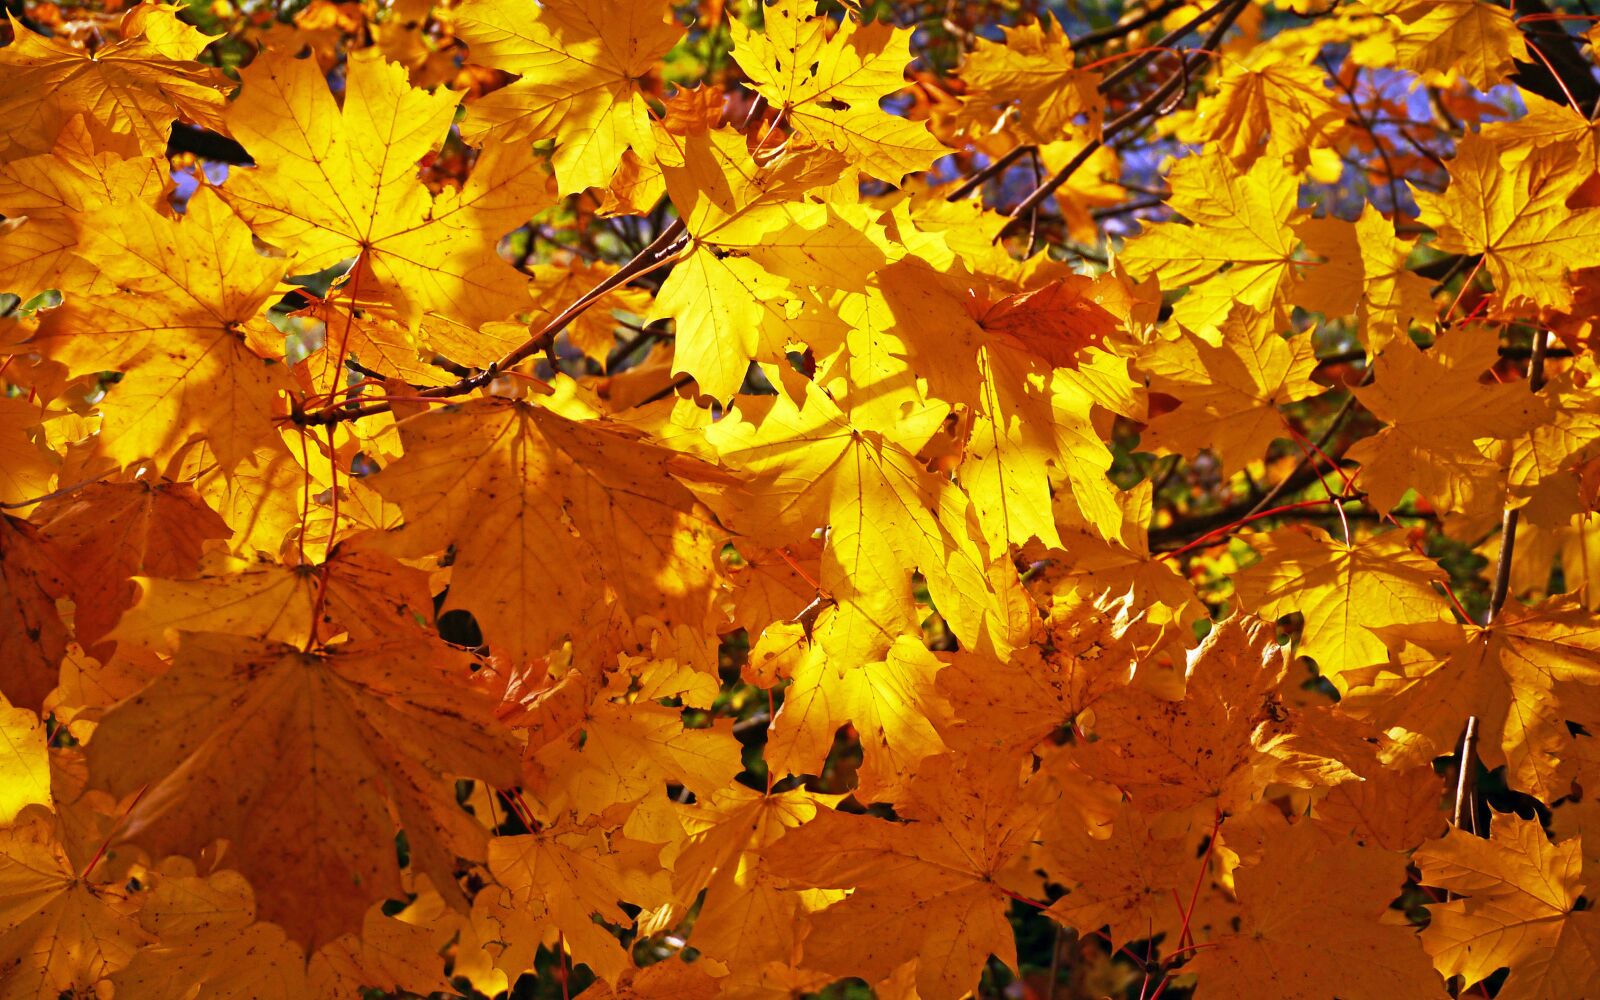 Panasonic Lumix DMC-GX1 sample photo. Fall foliage, golden yellow photography